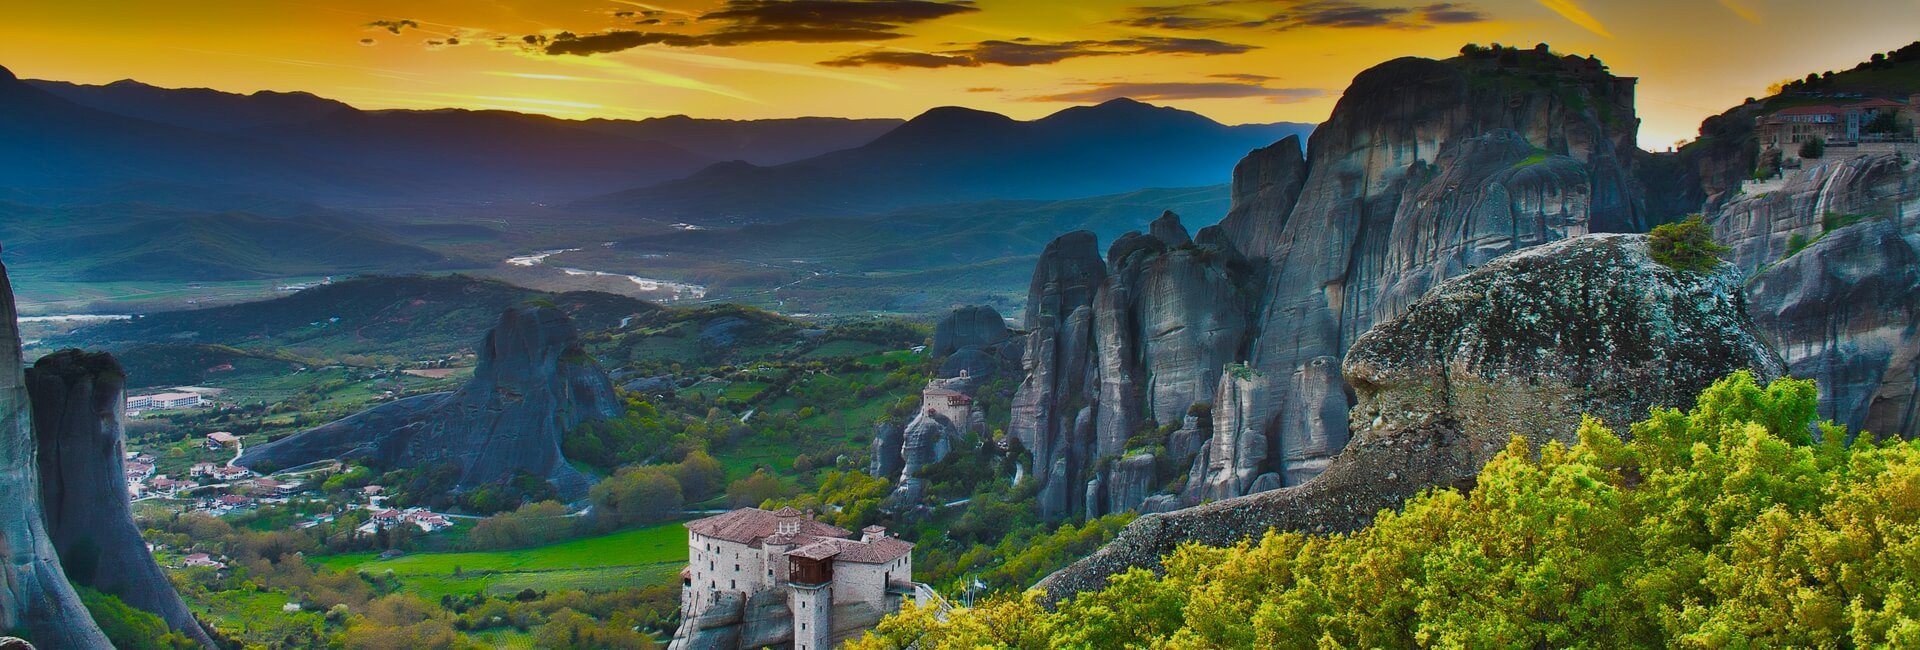 fantasy travel greece tours